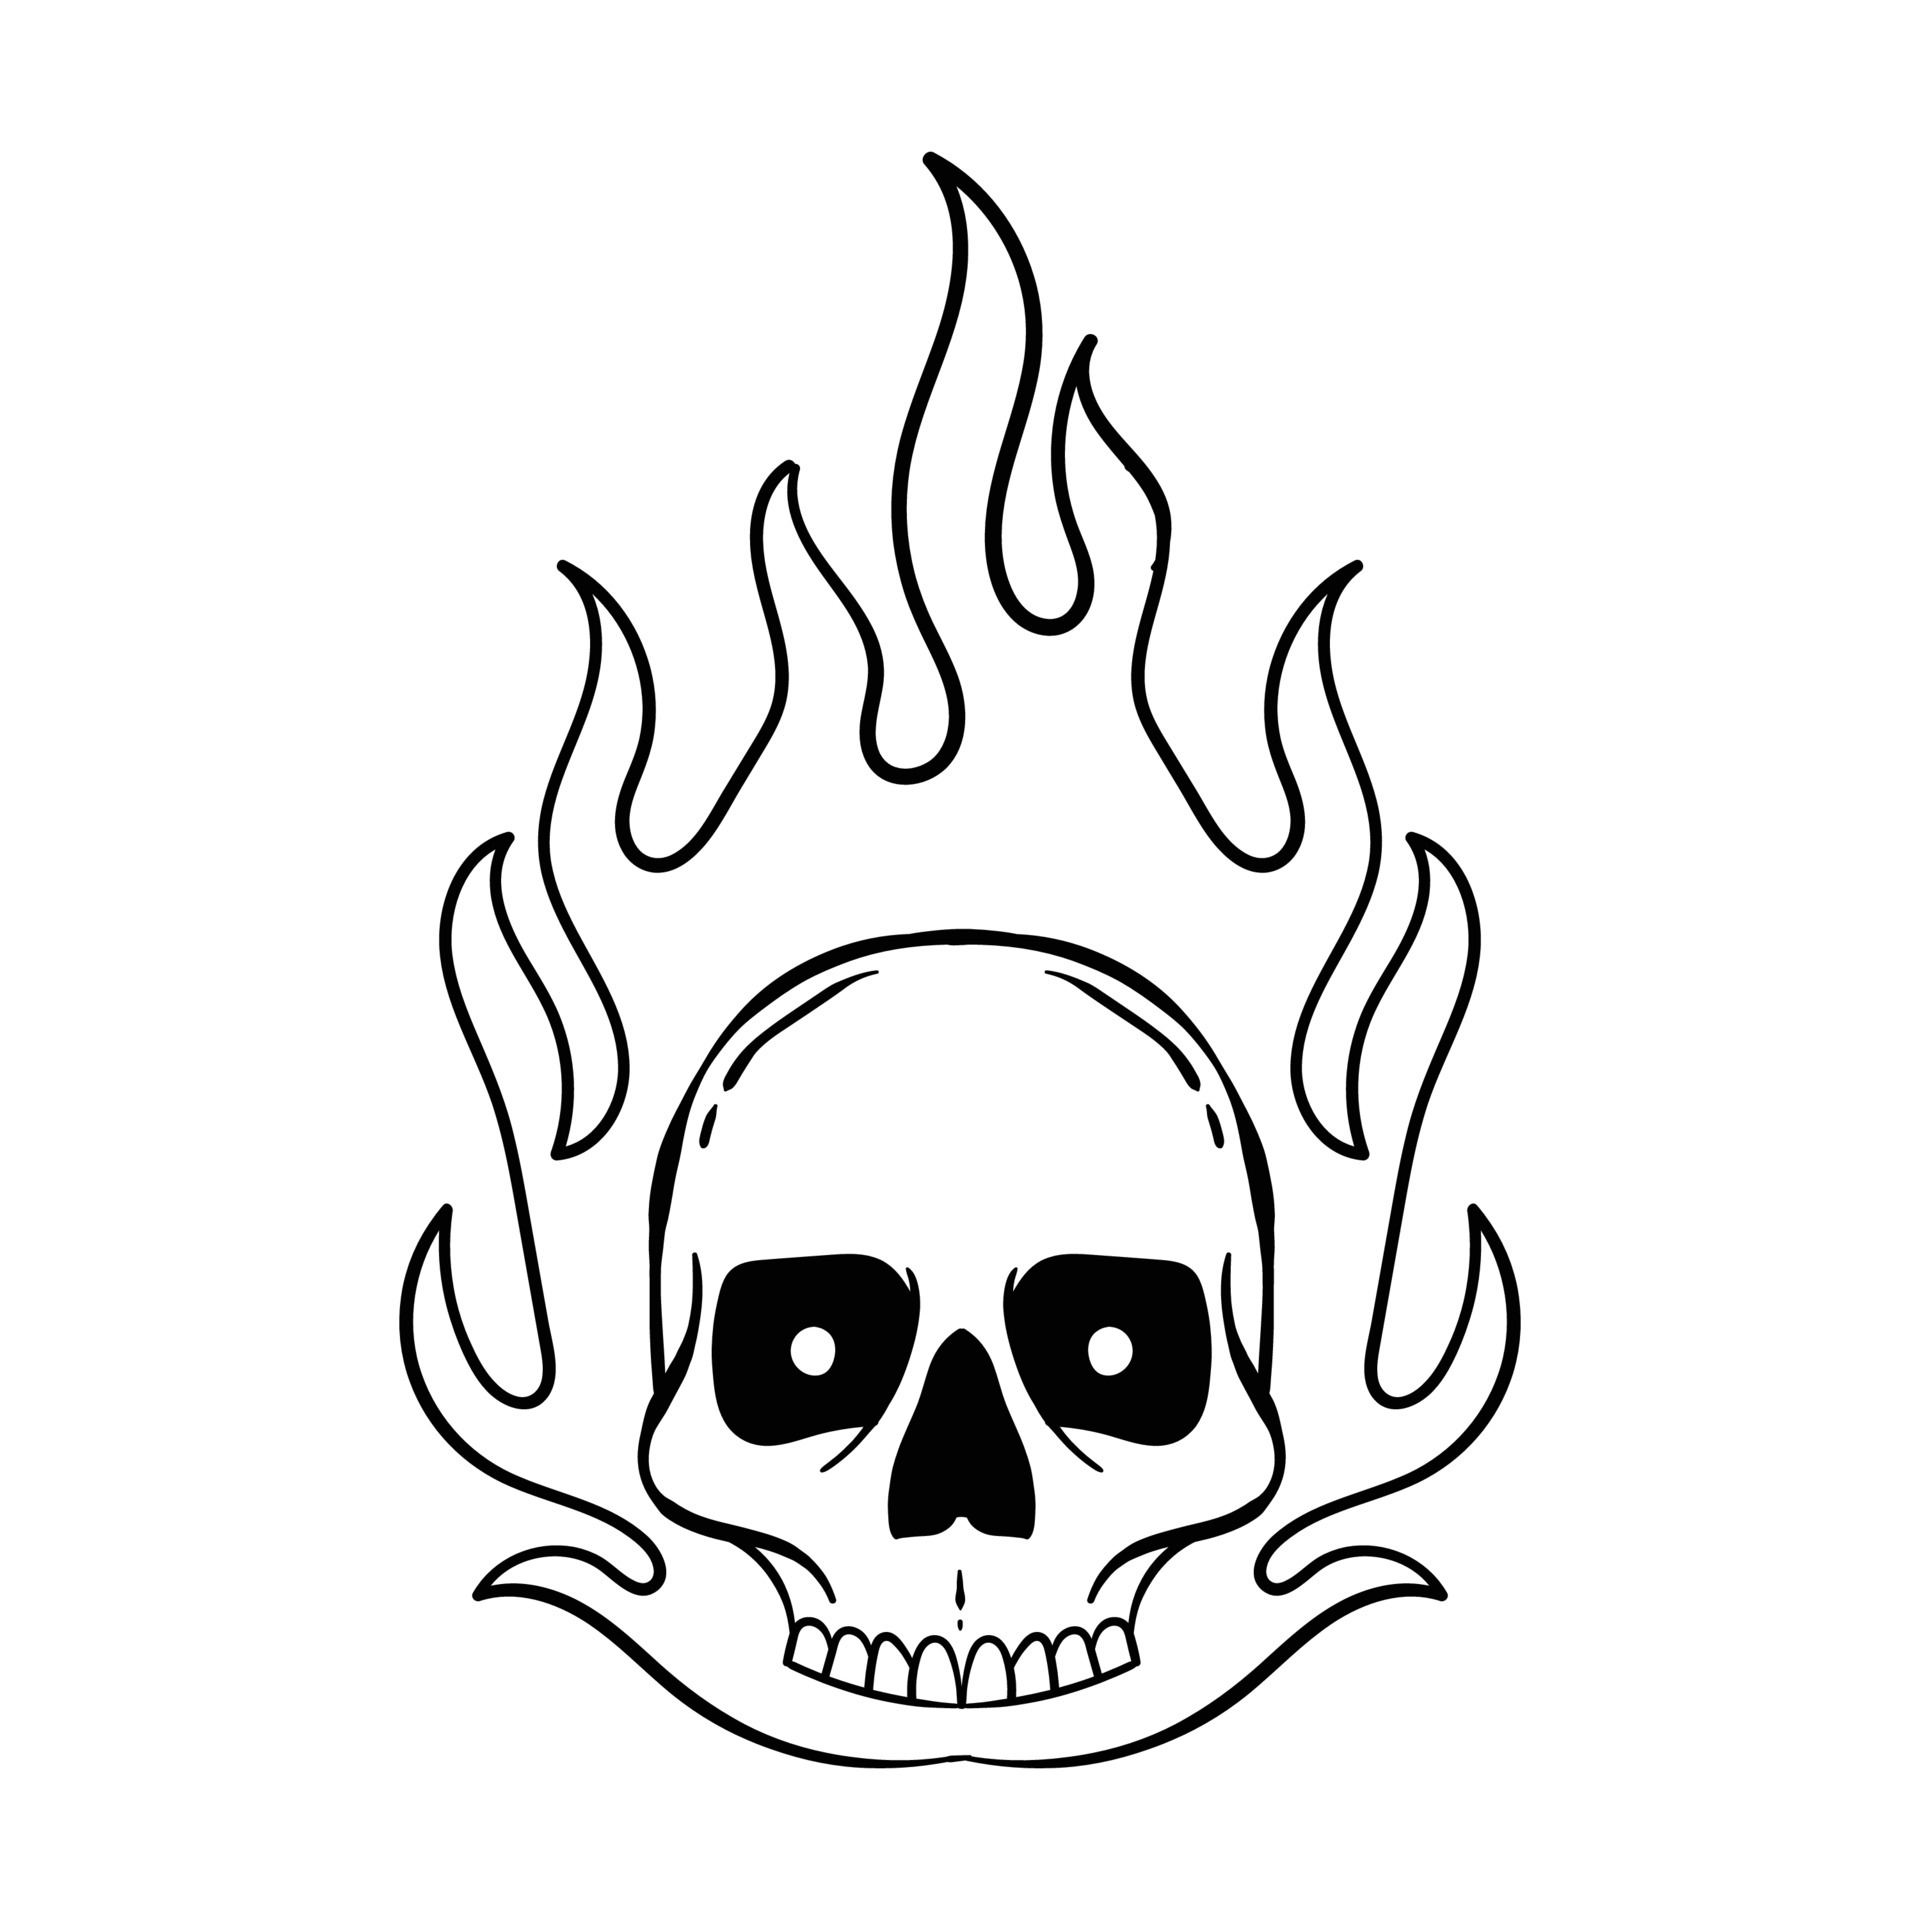 COMO DESENHAR A CAVEIRA DO FREE FIRE - How to Draw Free Fire Skull